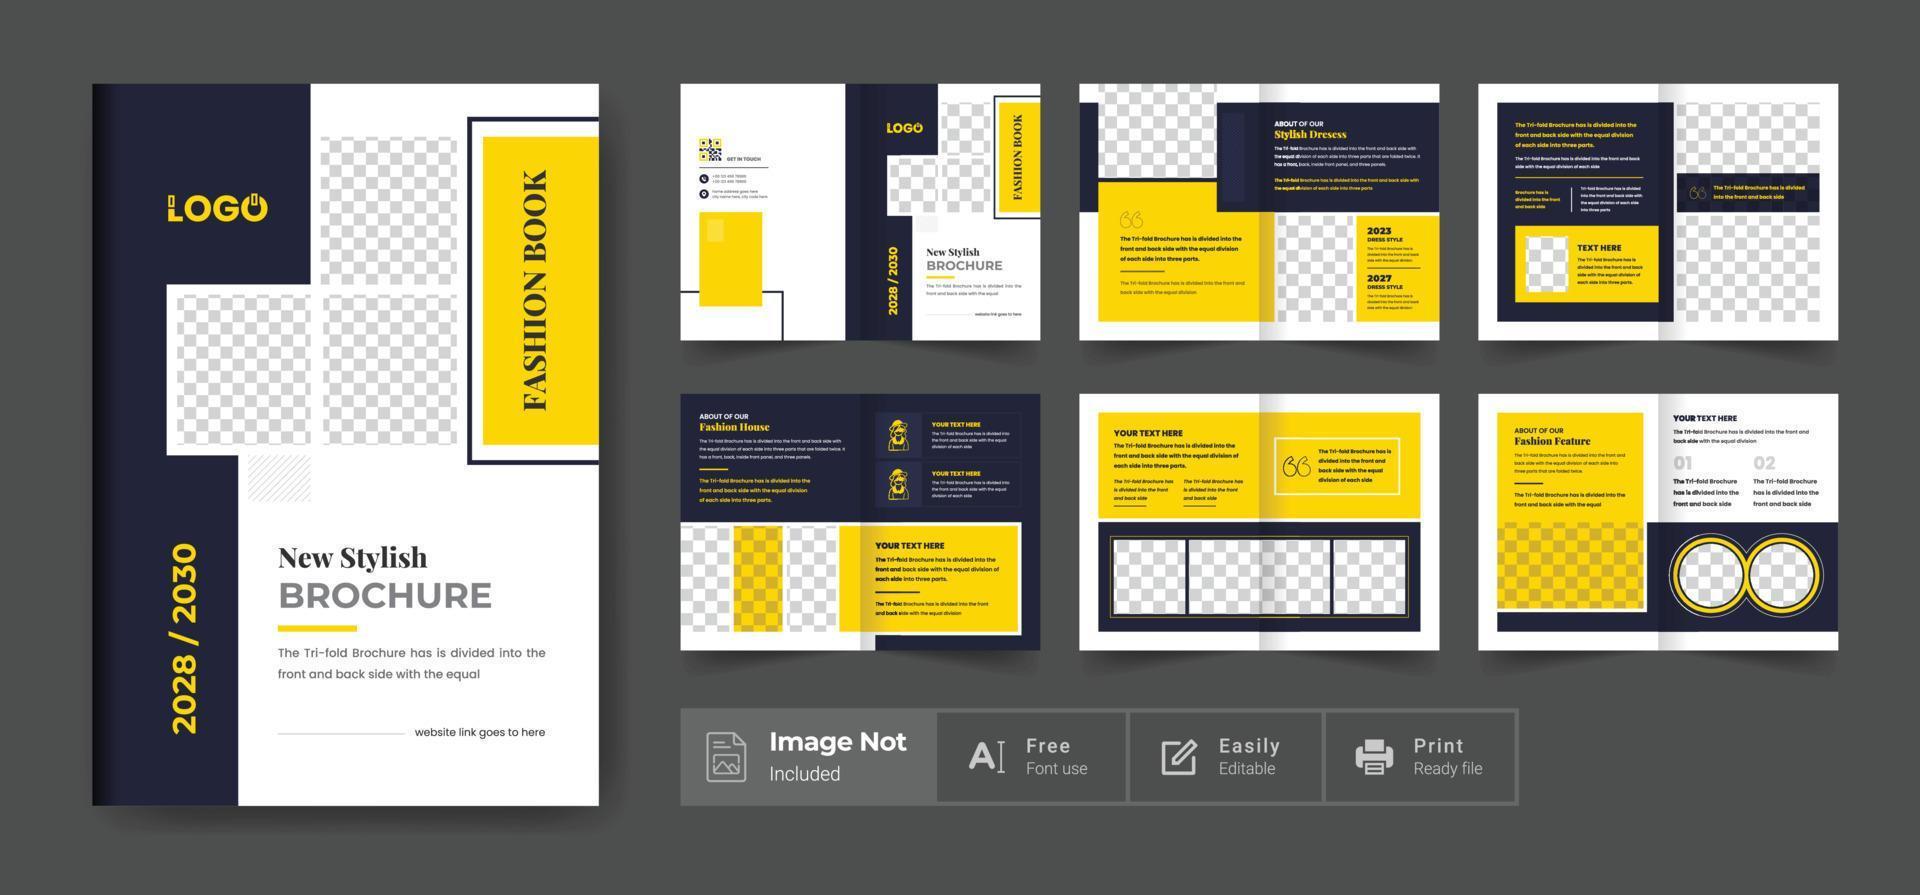 plantilla de diseño de folleto de moda. perfil de la empresa color amarillo tema de diseño moderno vector